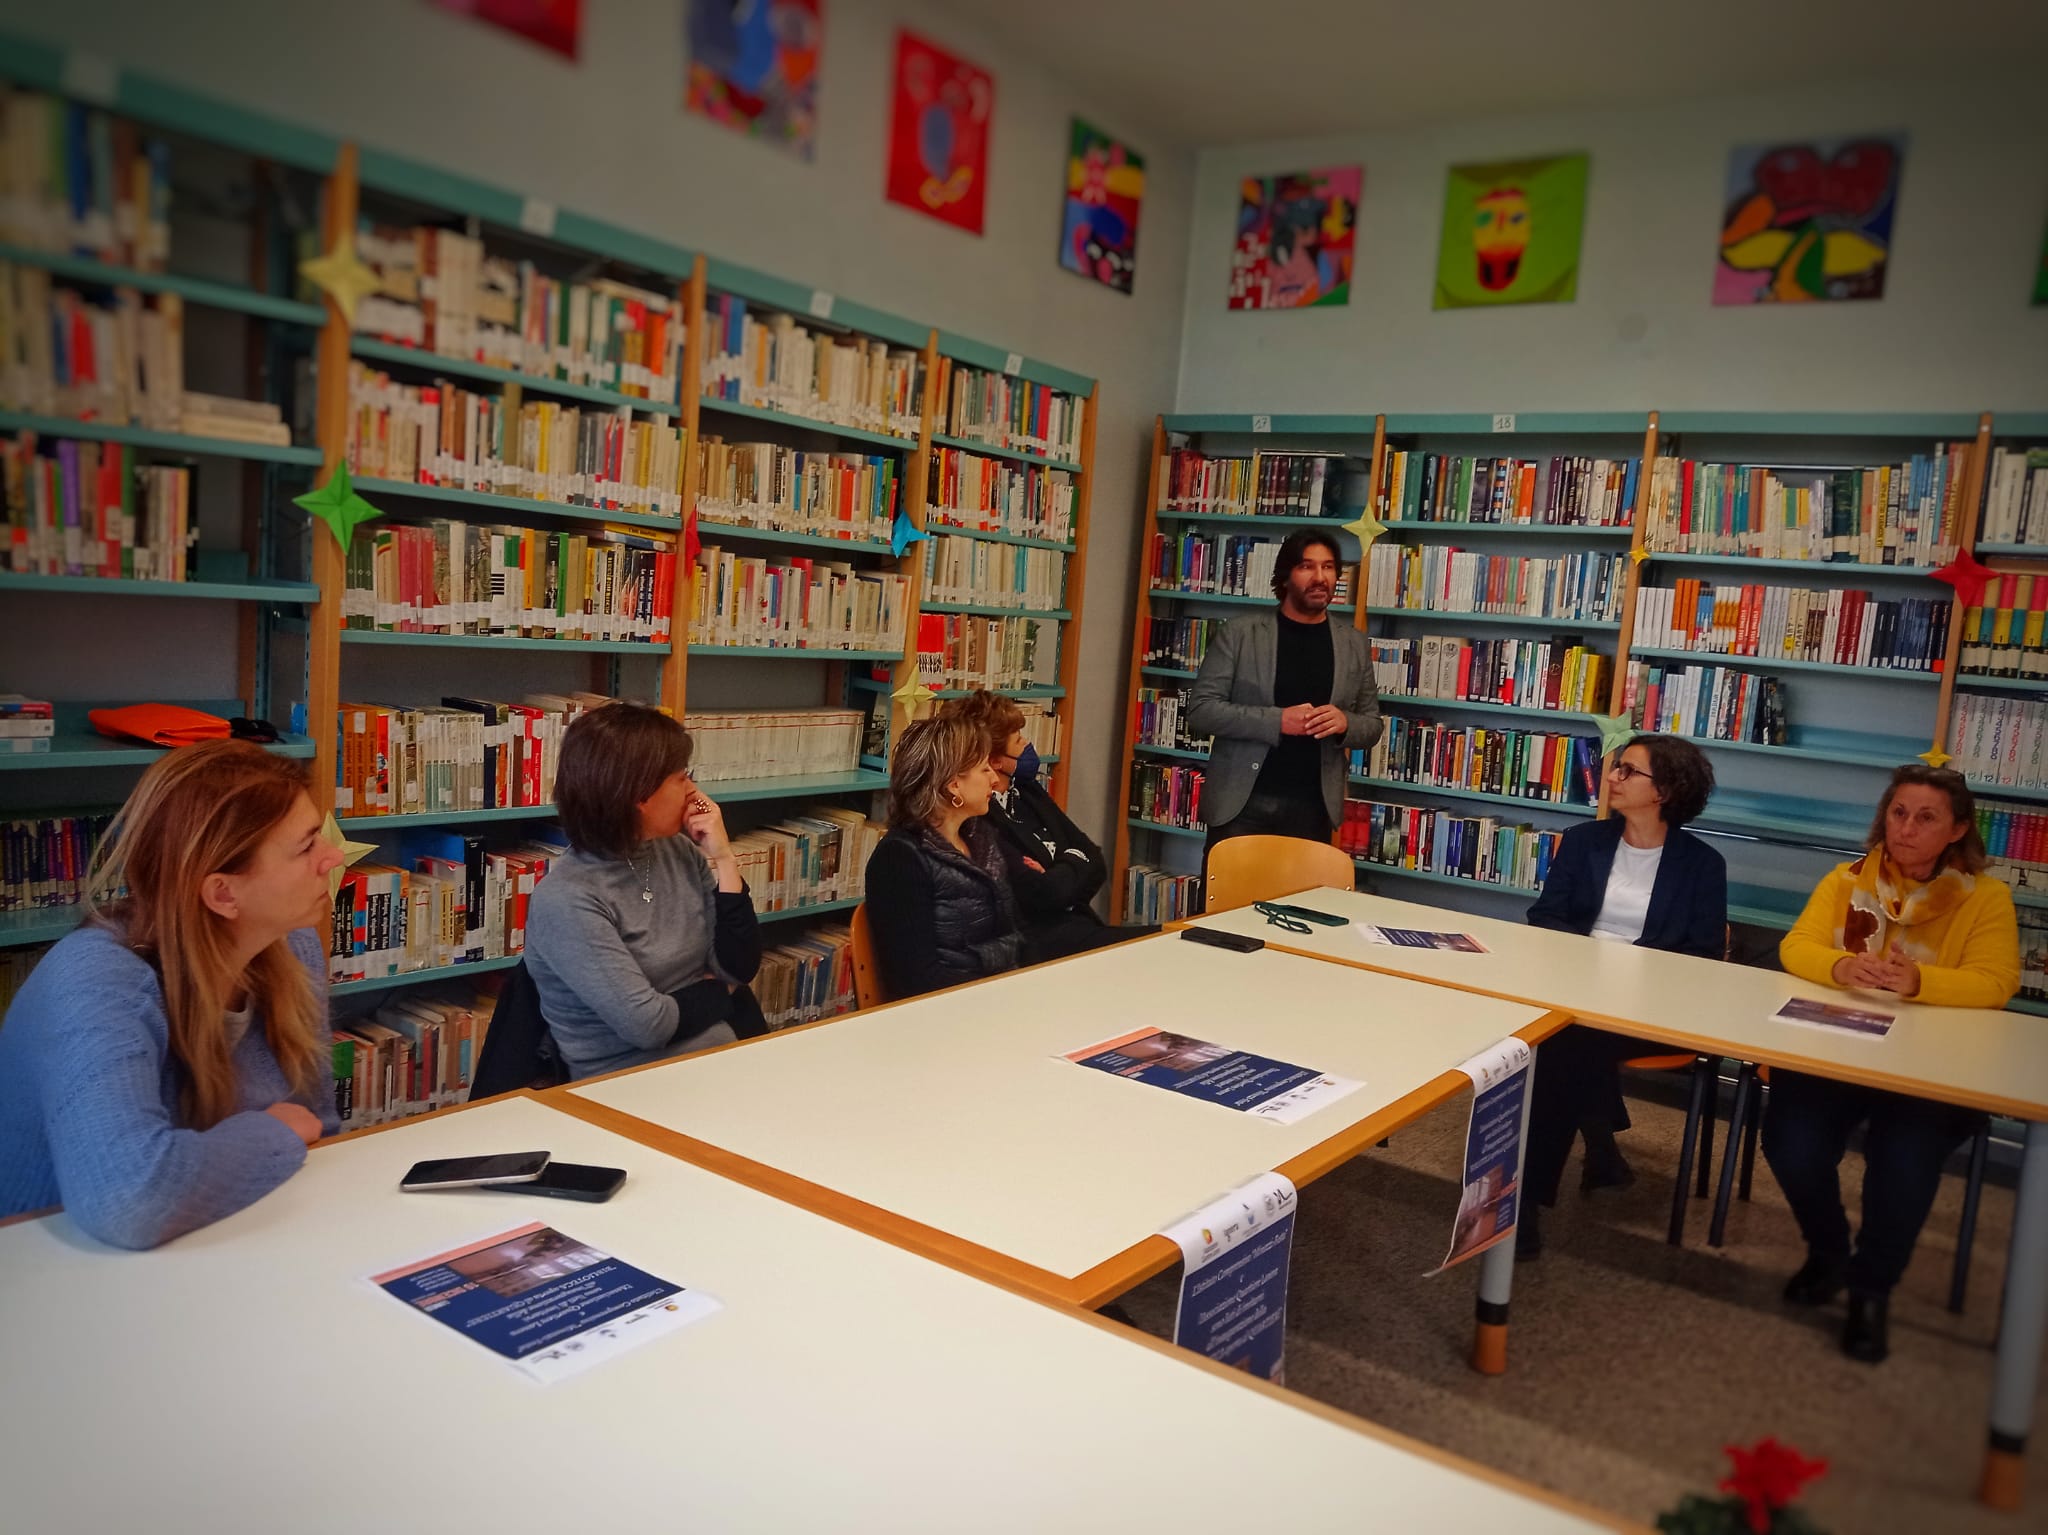 Inaugurata presso la Nicola Festa di Matera la “Biblioteca aperta al Quartiere” in collaborazione con l’Associazione Quartiere Lanera